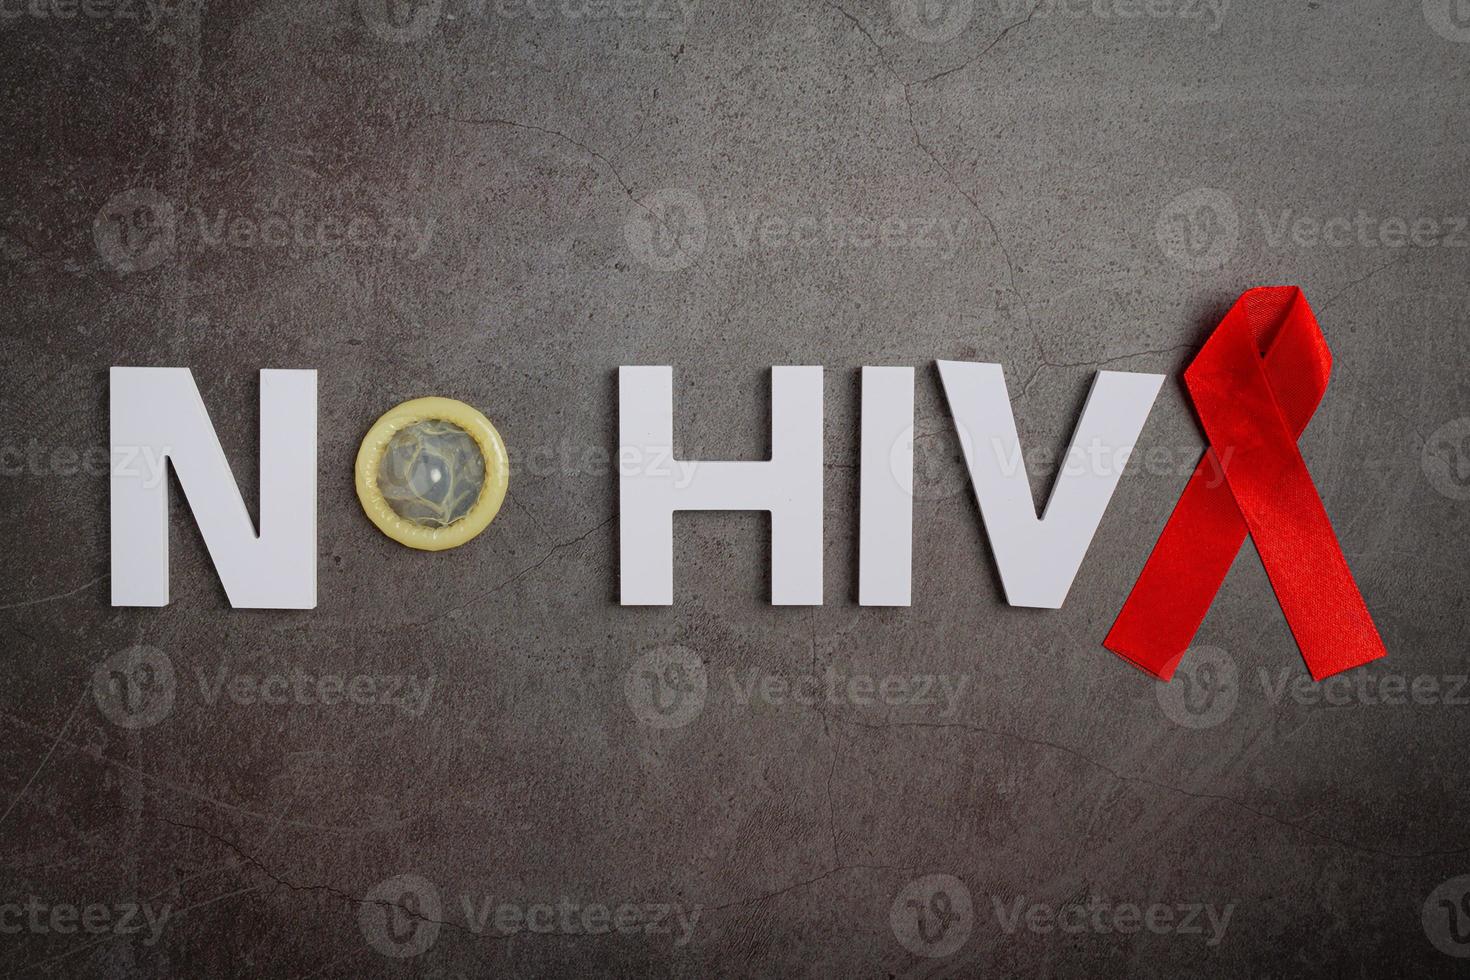 Welttag der sexuellen Gesundheit oder Aids foto